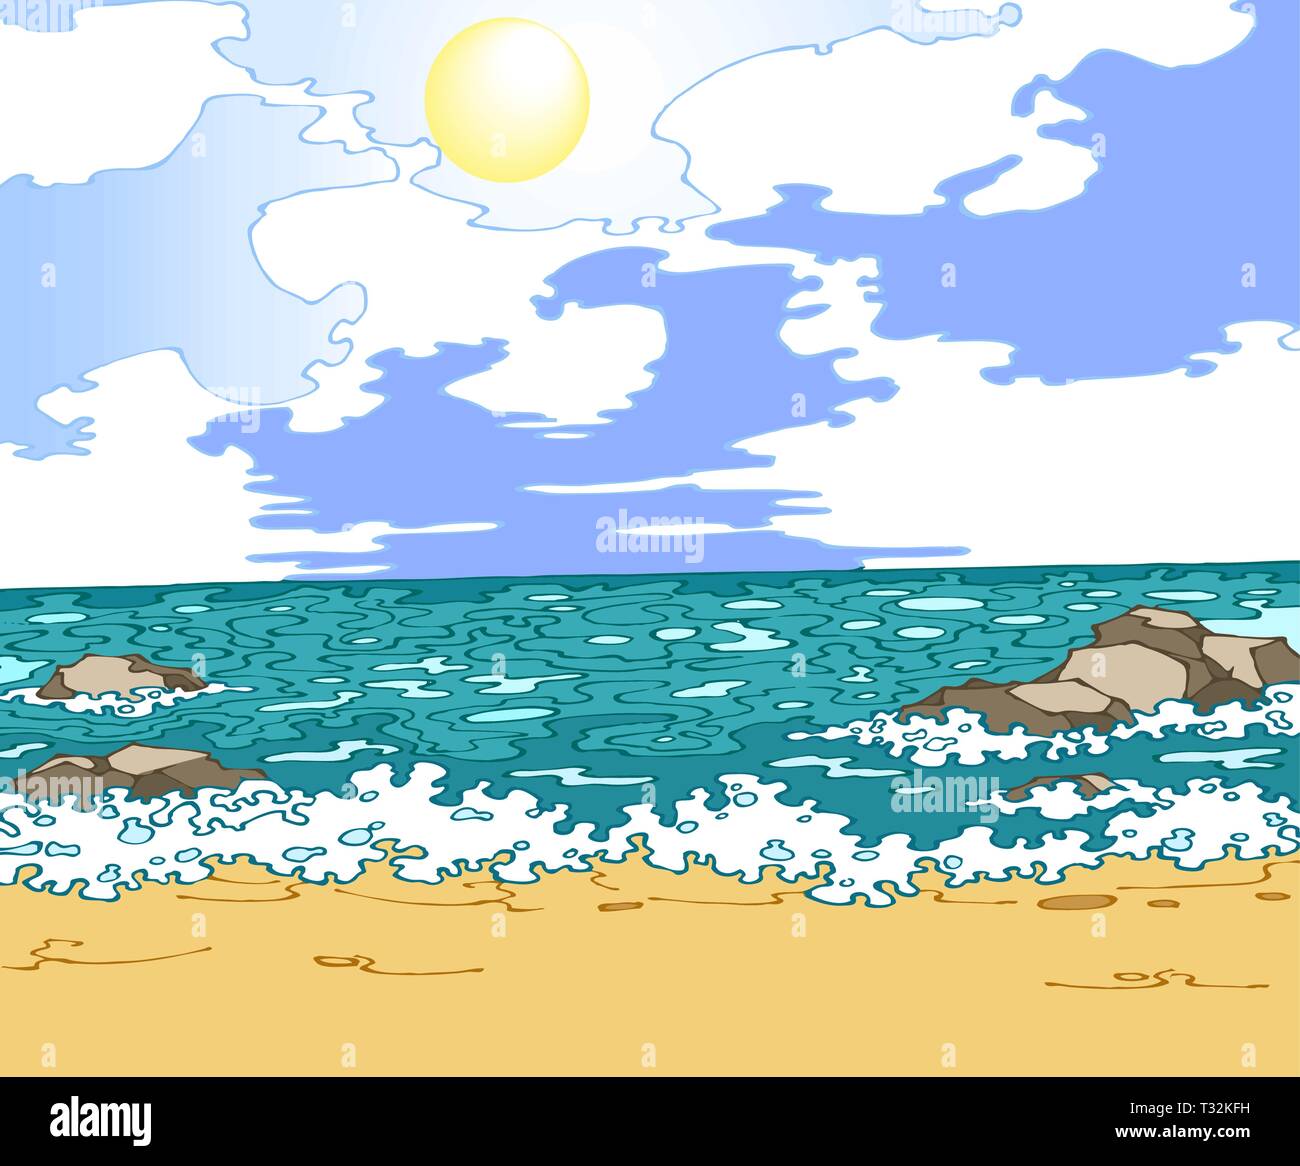 Seascape illustration vectorielle avec plage, sable jaune et ciel ensoleillé avec des nuages blancs. Illustration de Vecteur